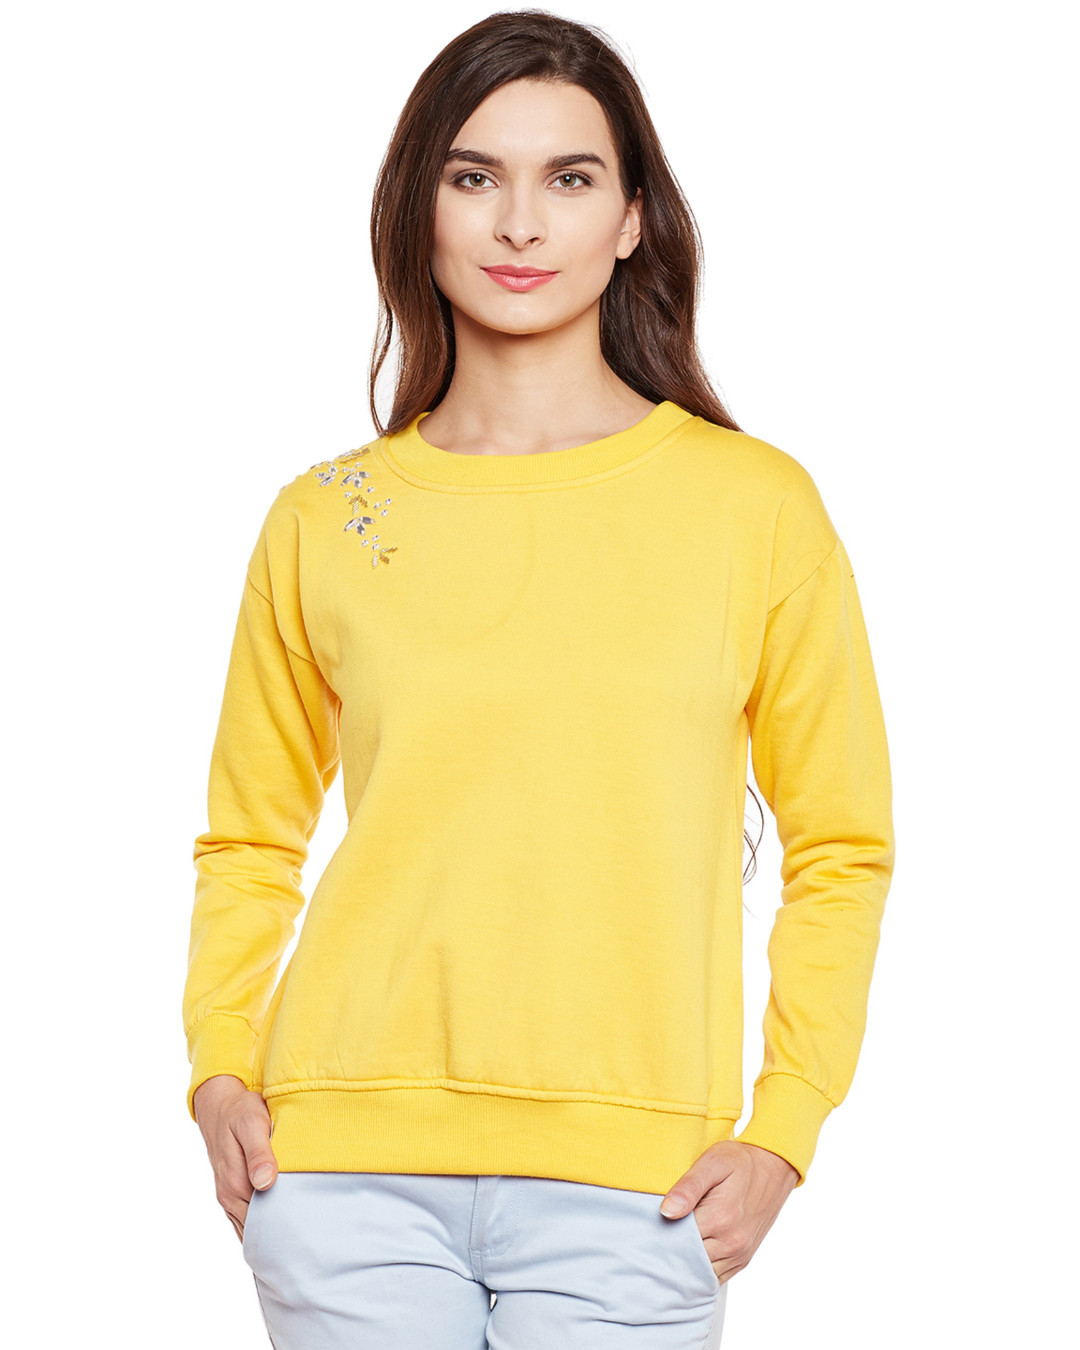 Belle Fille Women S Yellow Embellished Sweatshirt21 452801 1637764787 1 